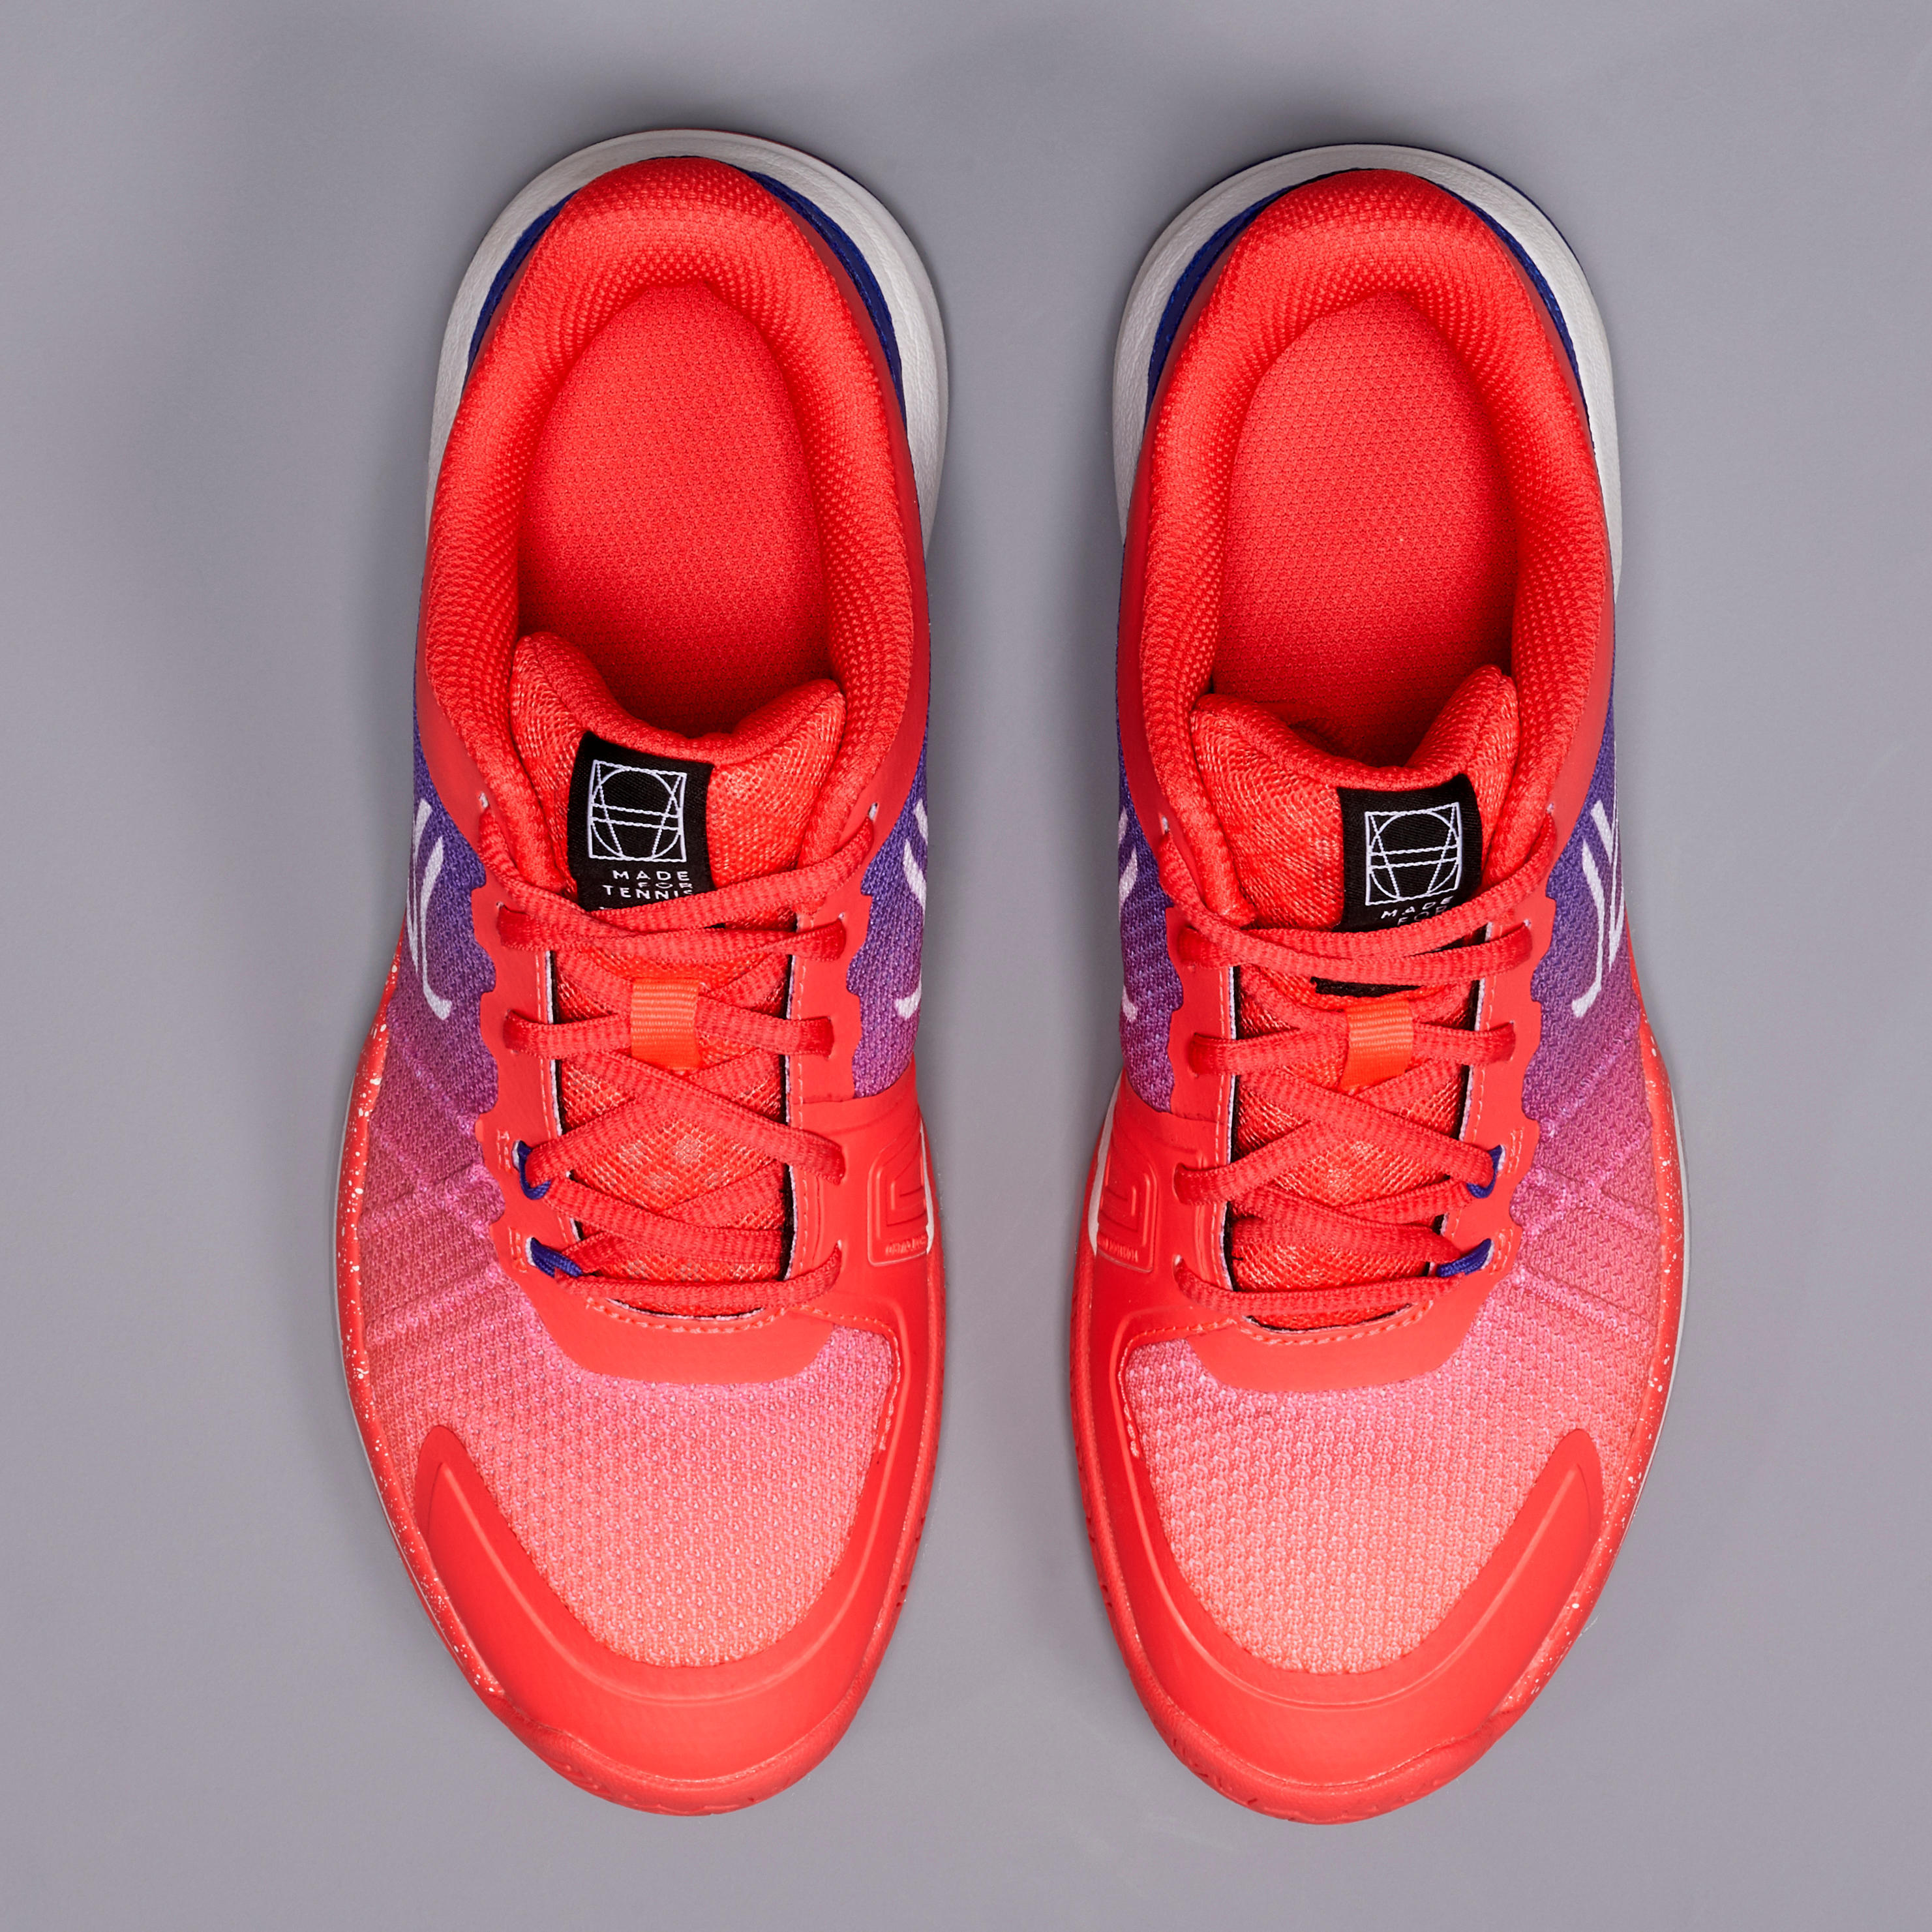 TS590 Women's Tennis Shoes - Pink 5/9